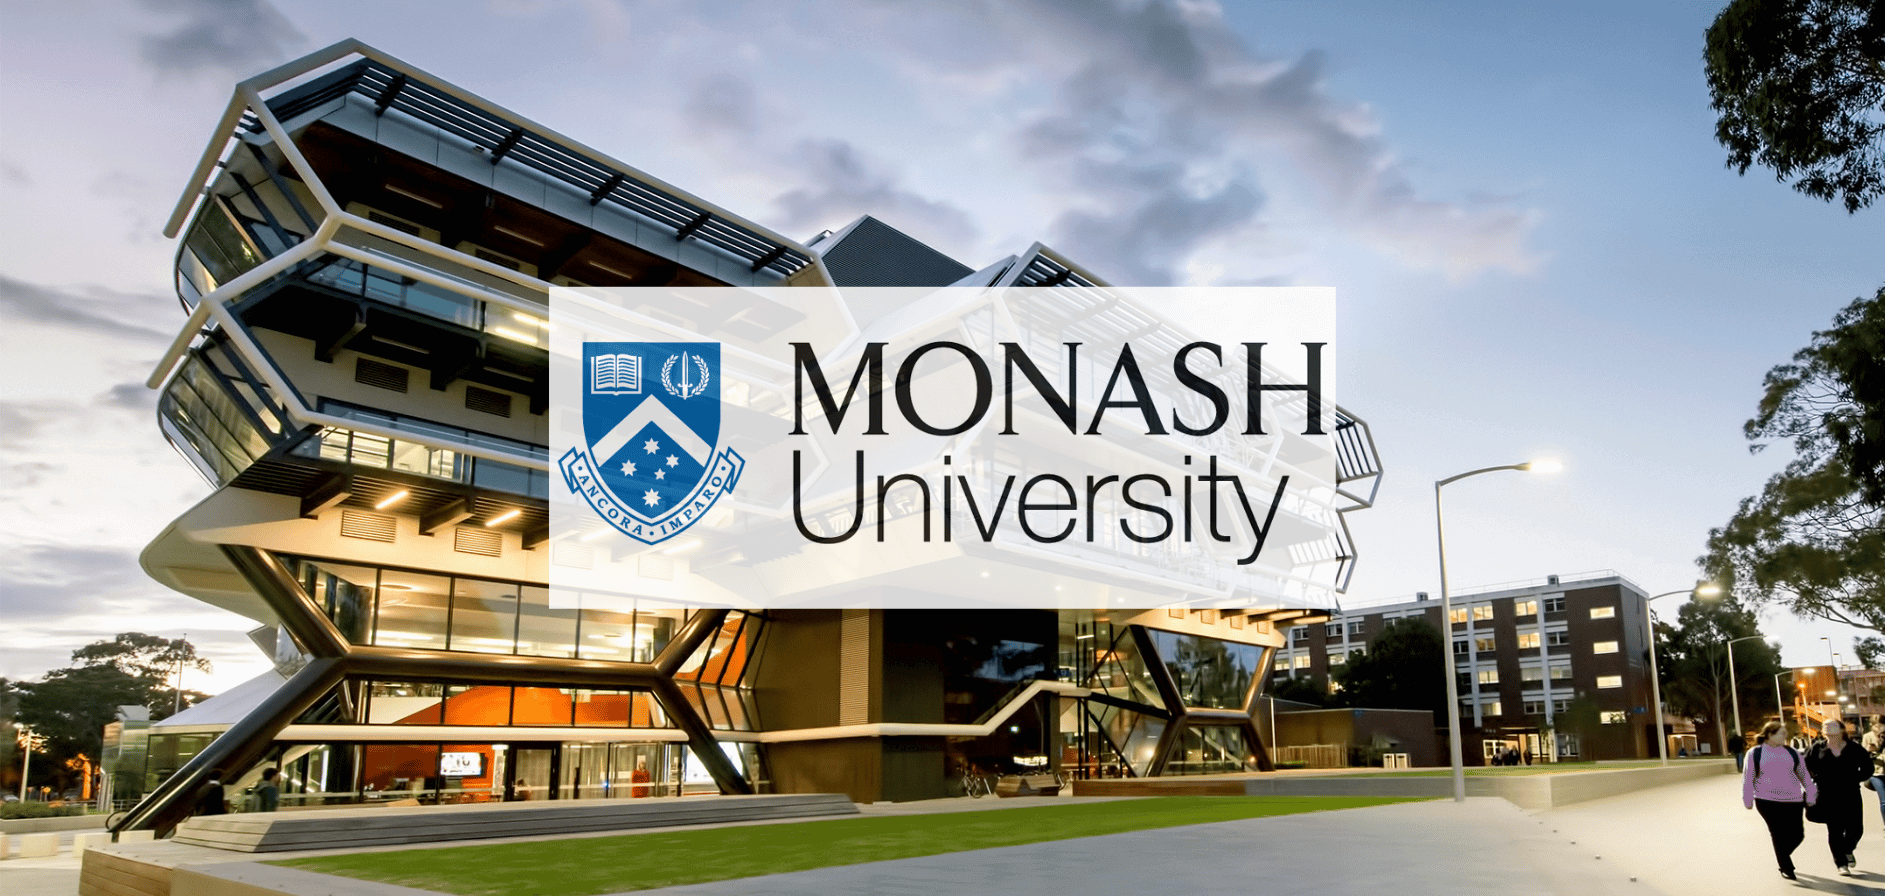 جامعة موناش في استراليا Monash University